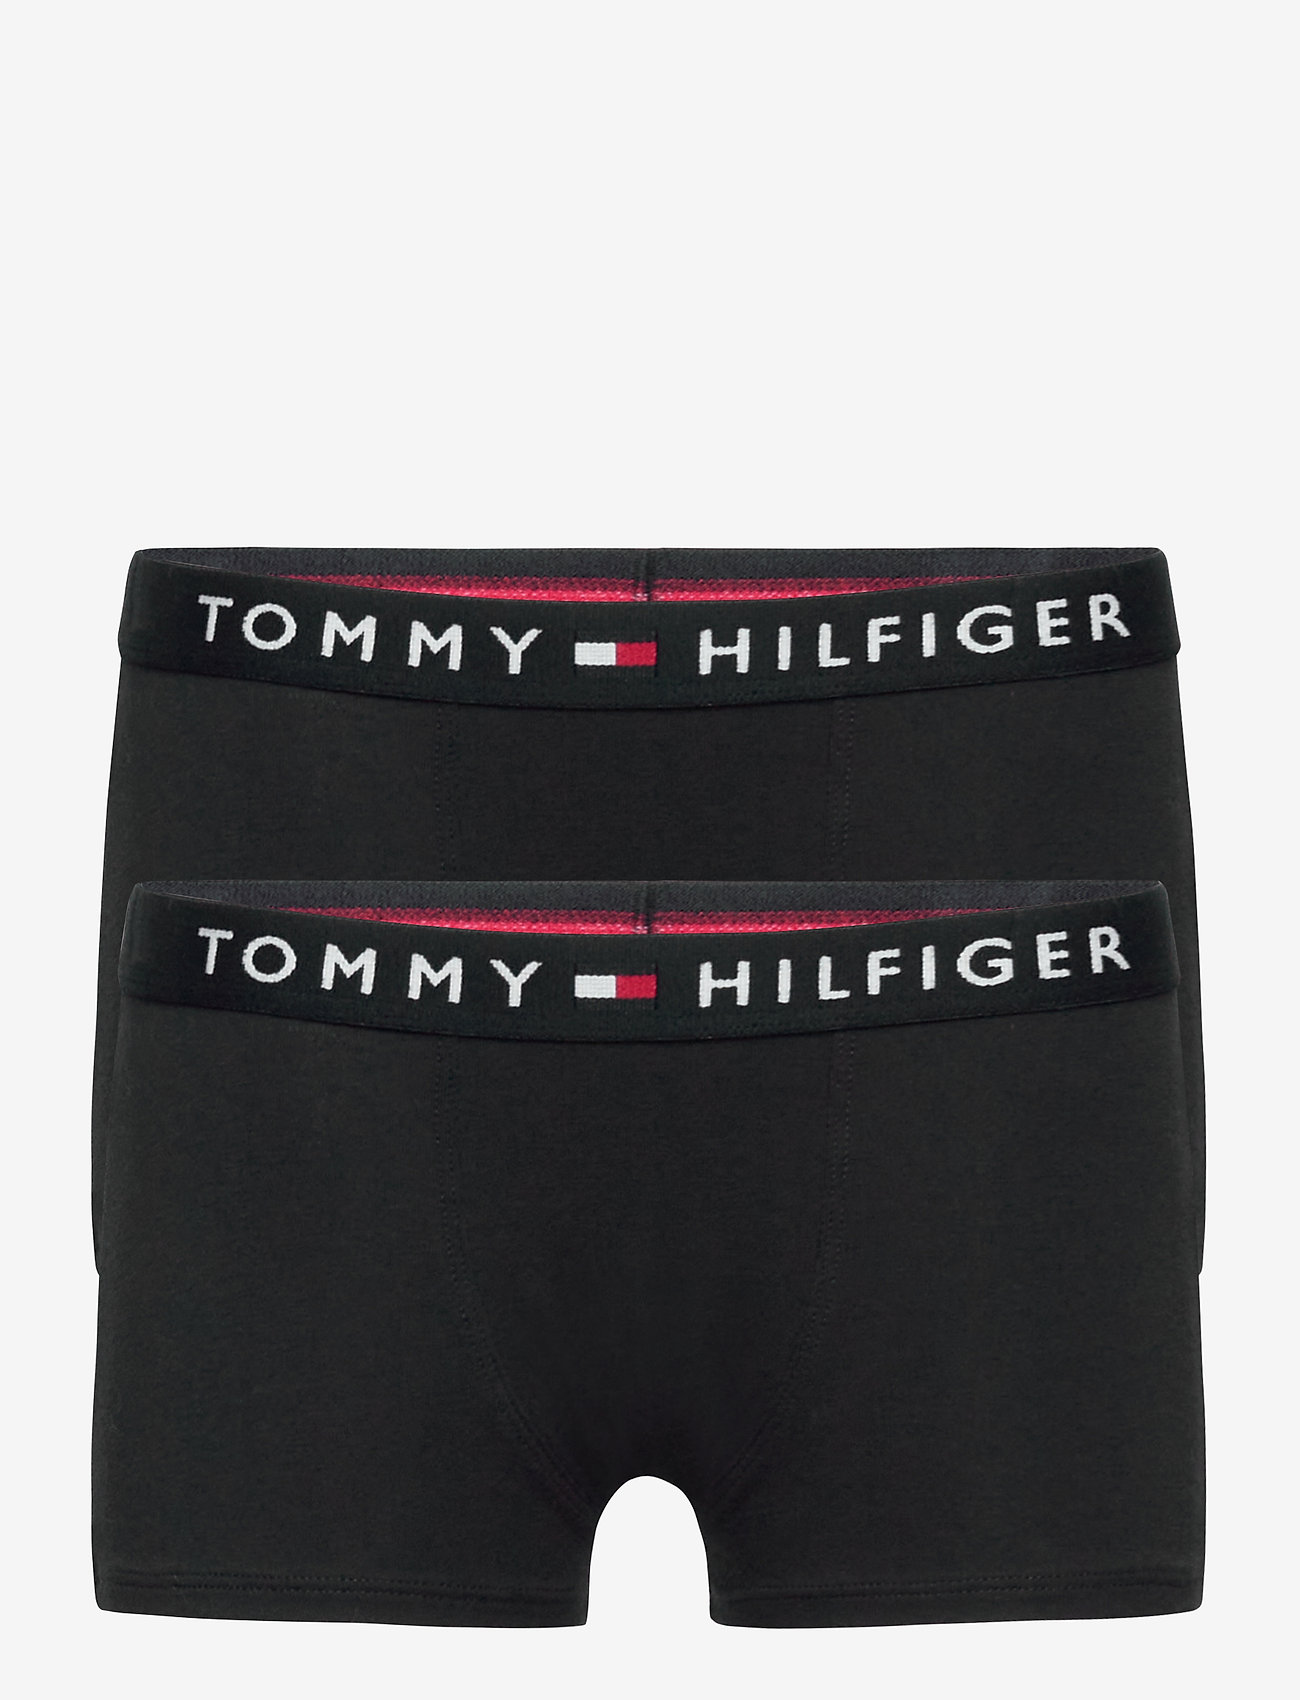 Tommy Hilfiger 2p Trunk - Underwear | Boozt.com